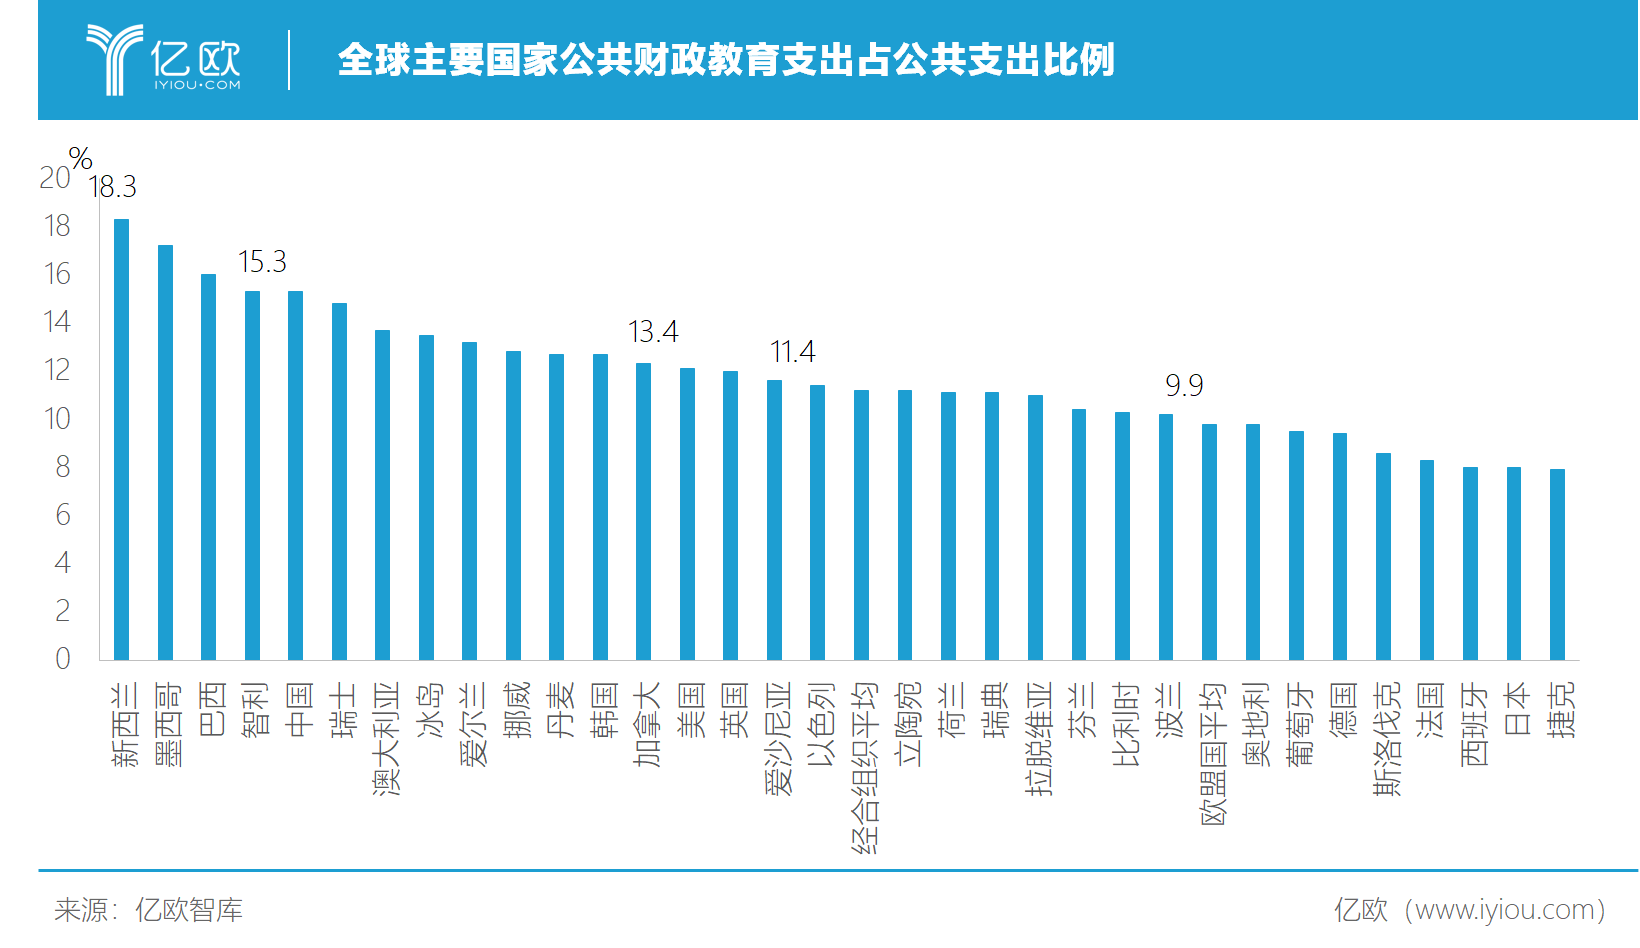 中国的财政开支占gdp_中国国防费占GDP和财政预算支出比重均处於较低水平